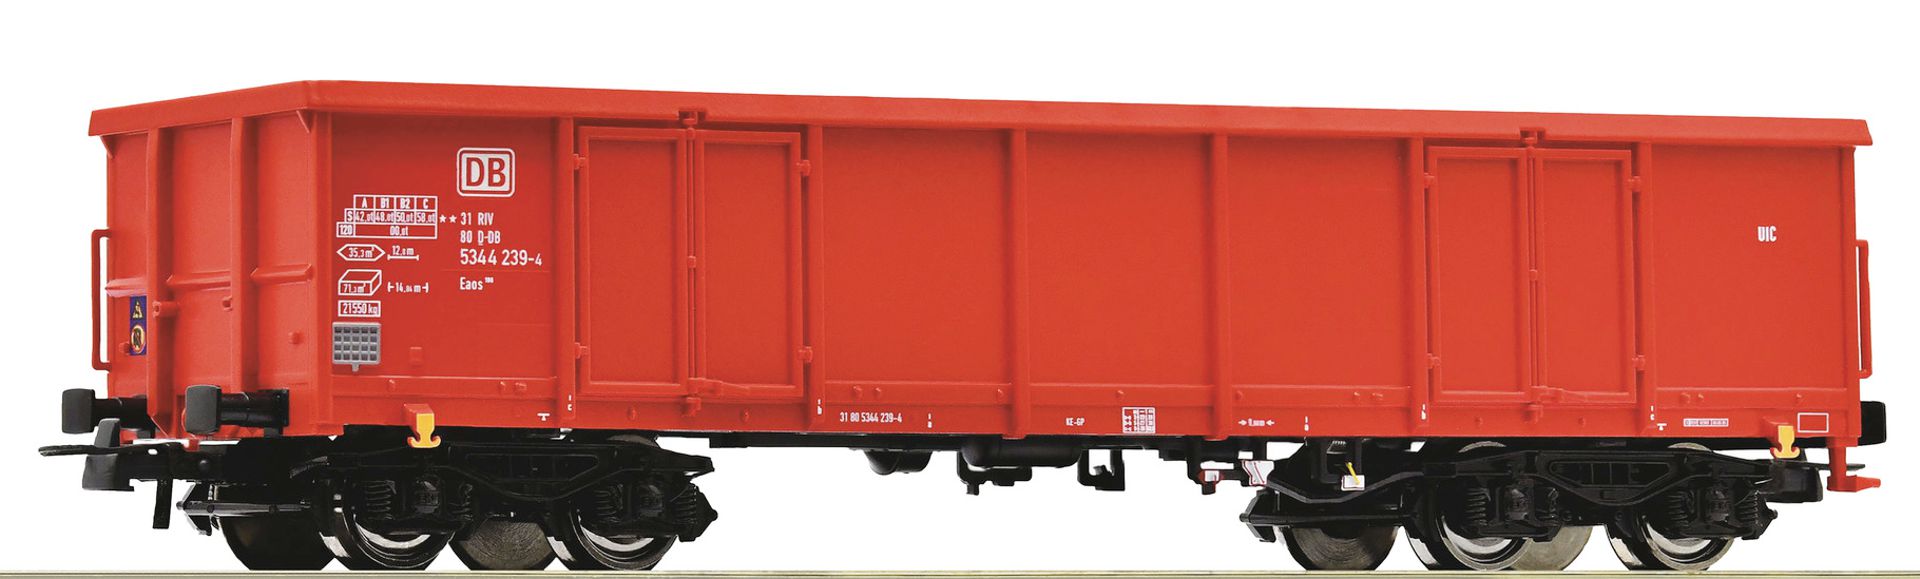 Roco 75860 - Offener Güterwagen Eaos, DBAG, Ep.V-VI, Wagen 2